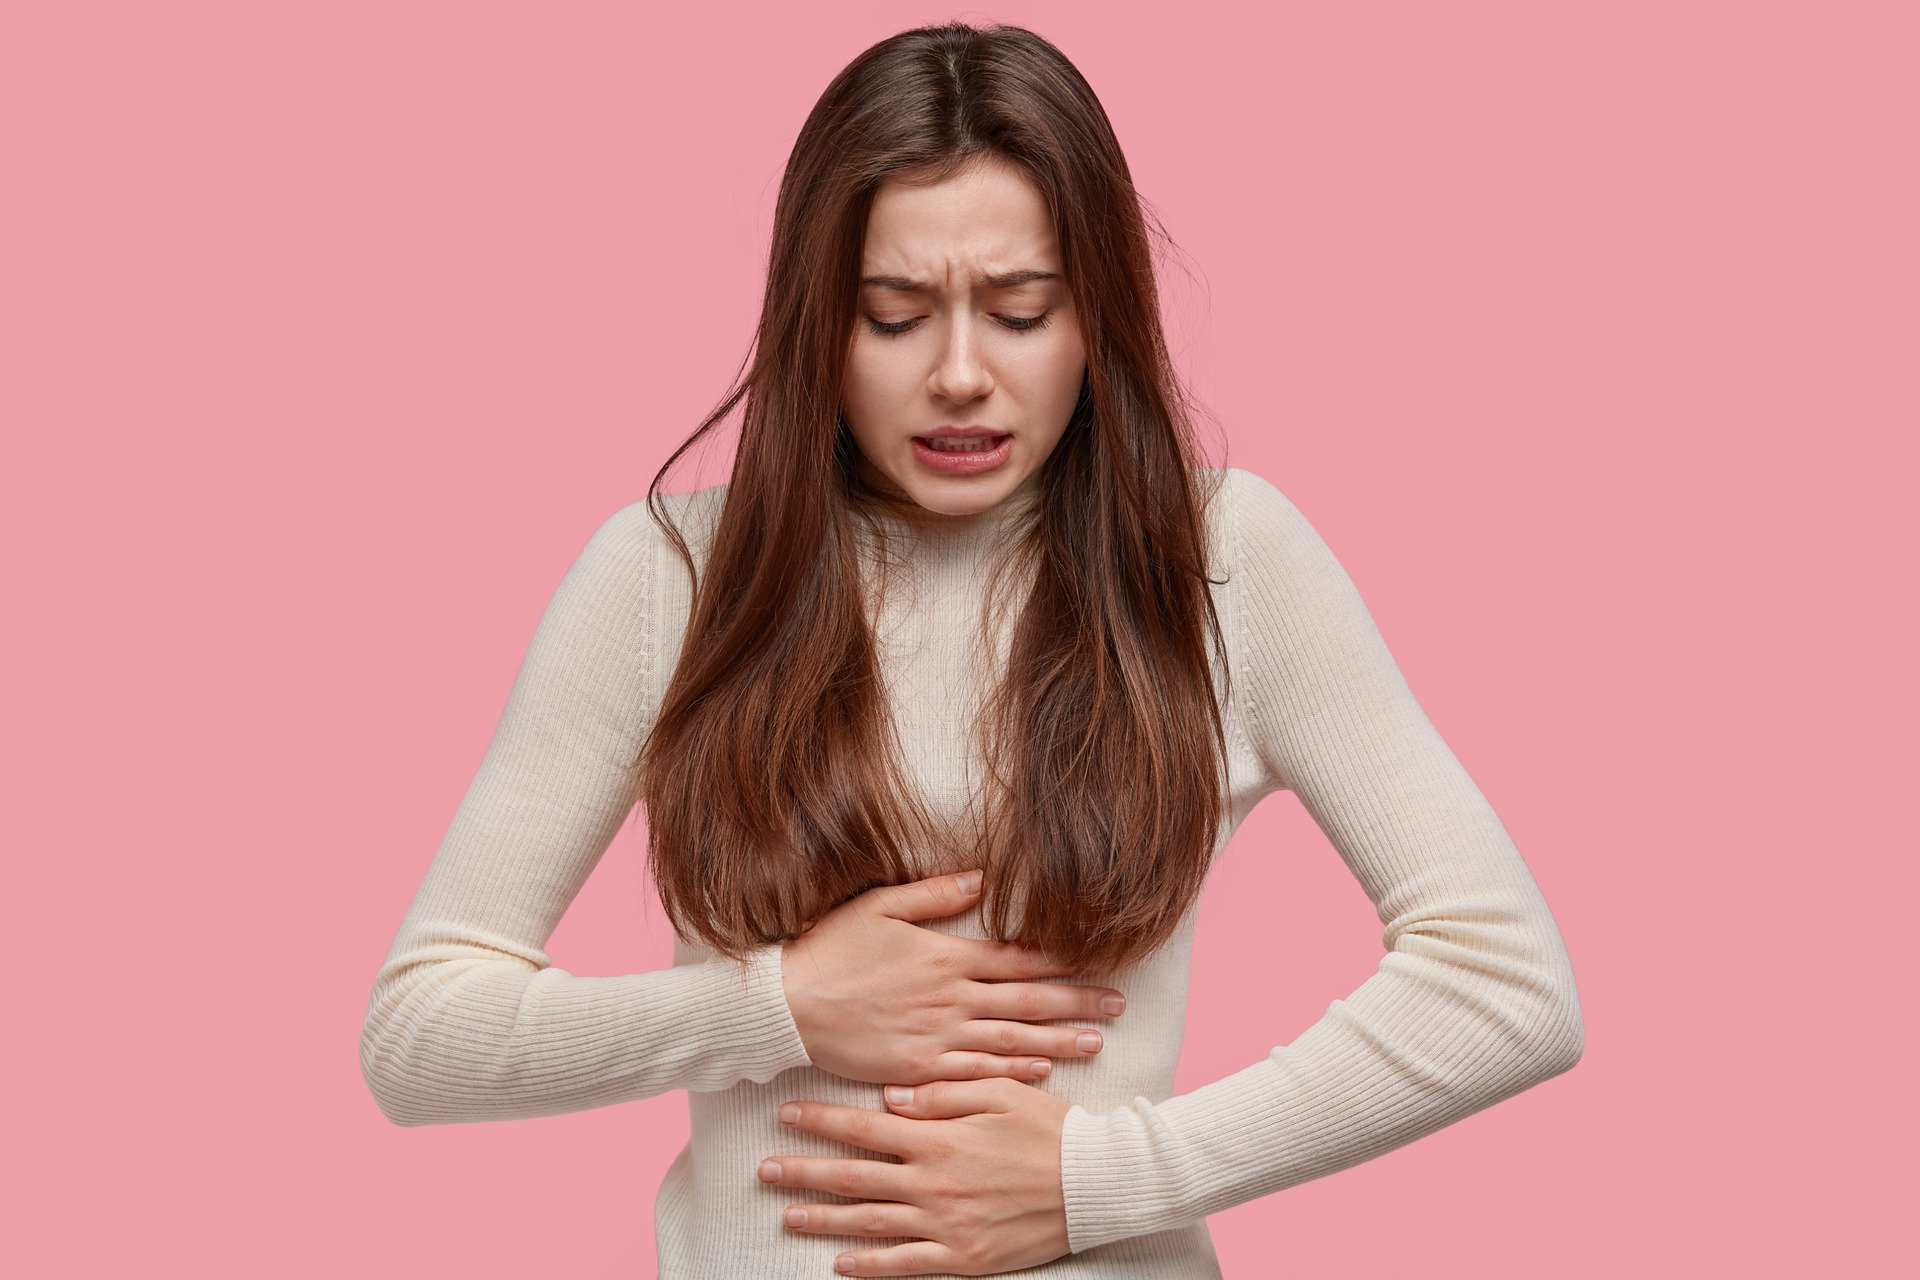 Dolor de ovarios: por qué duelen y remedios caseros para eliminarlo